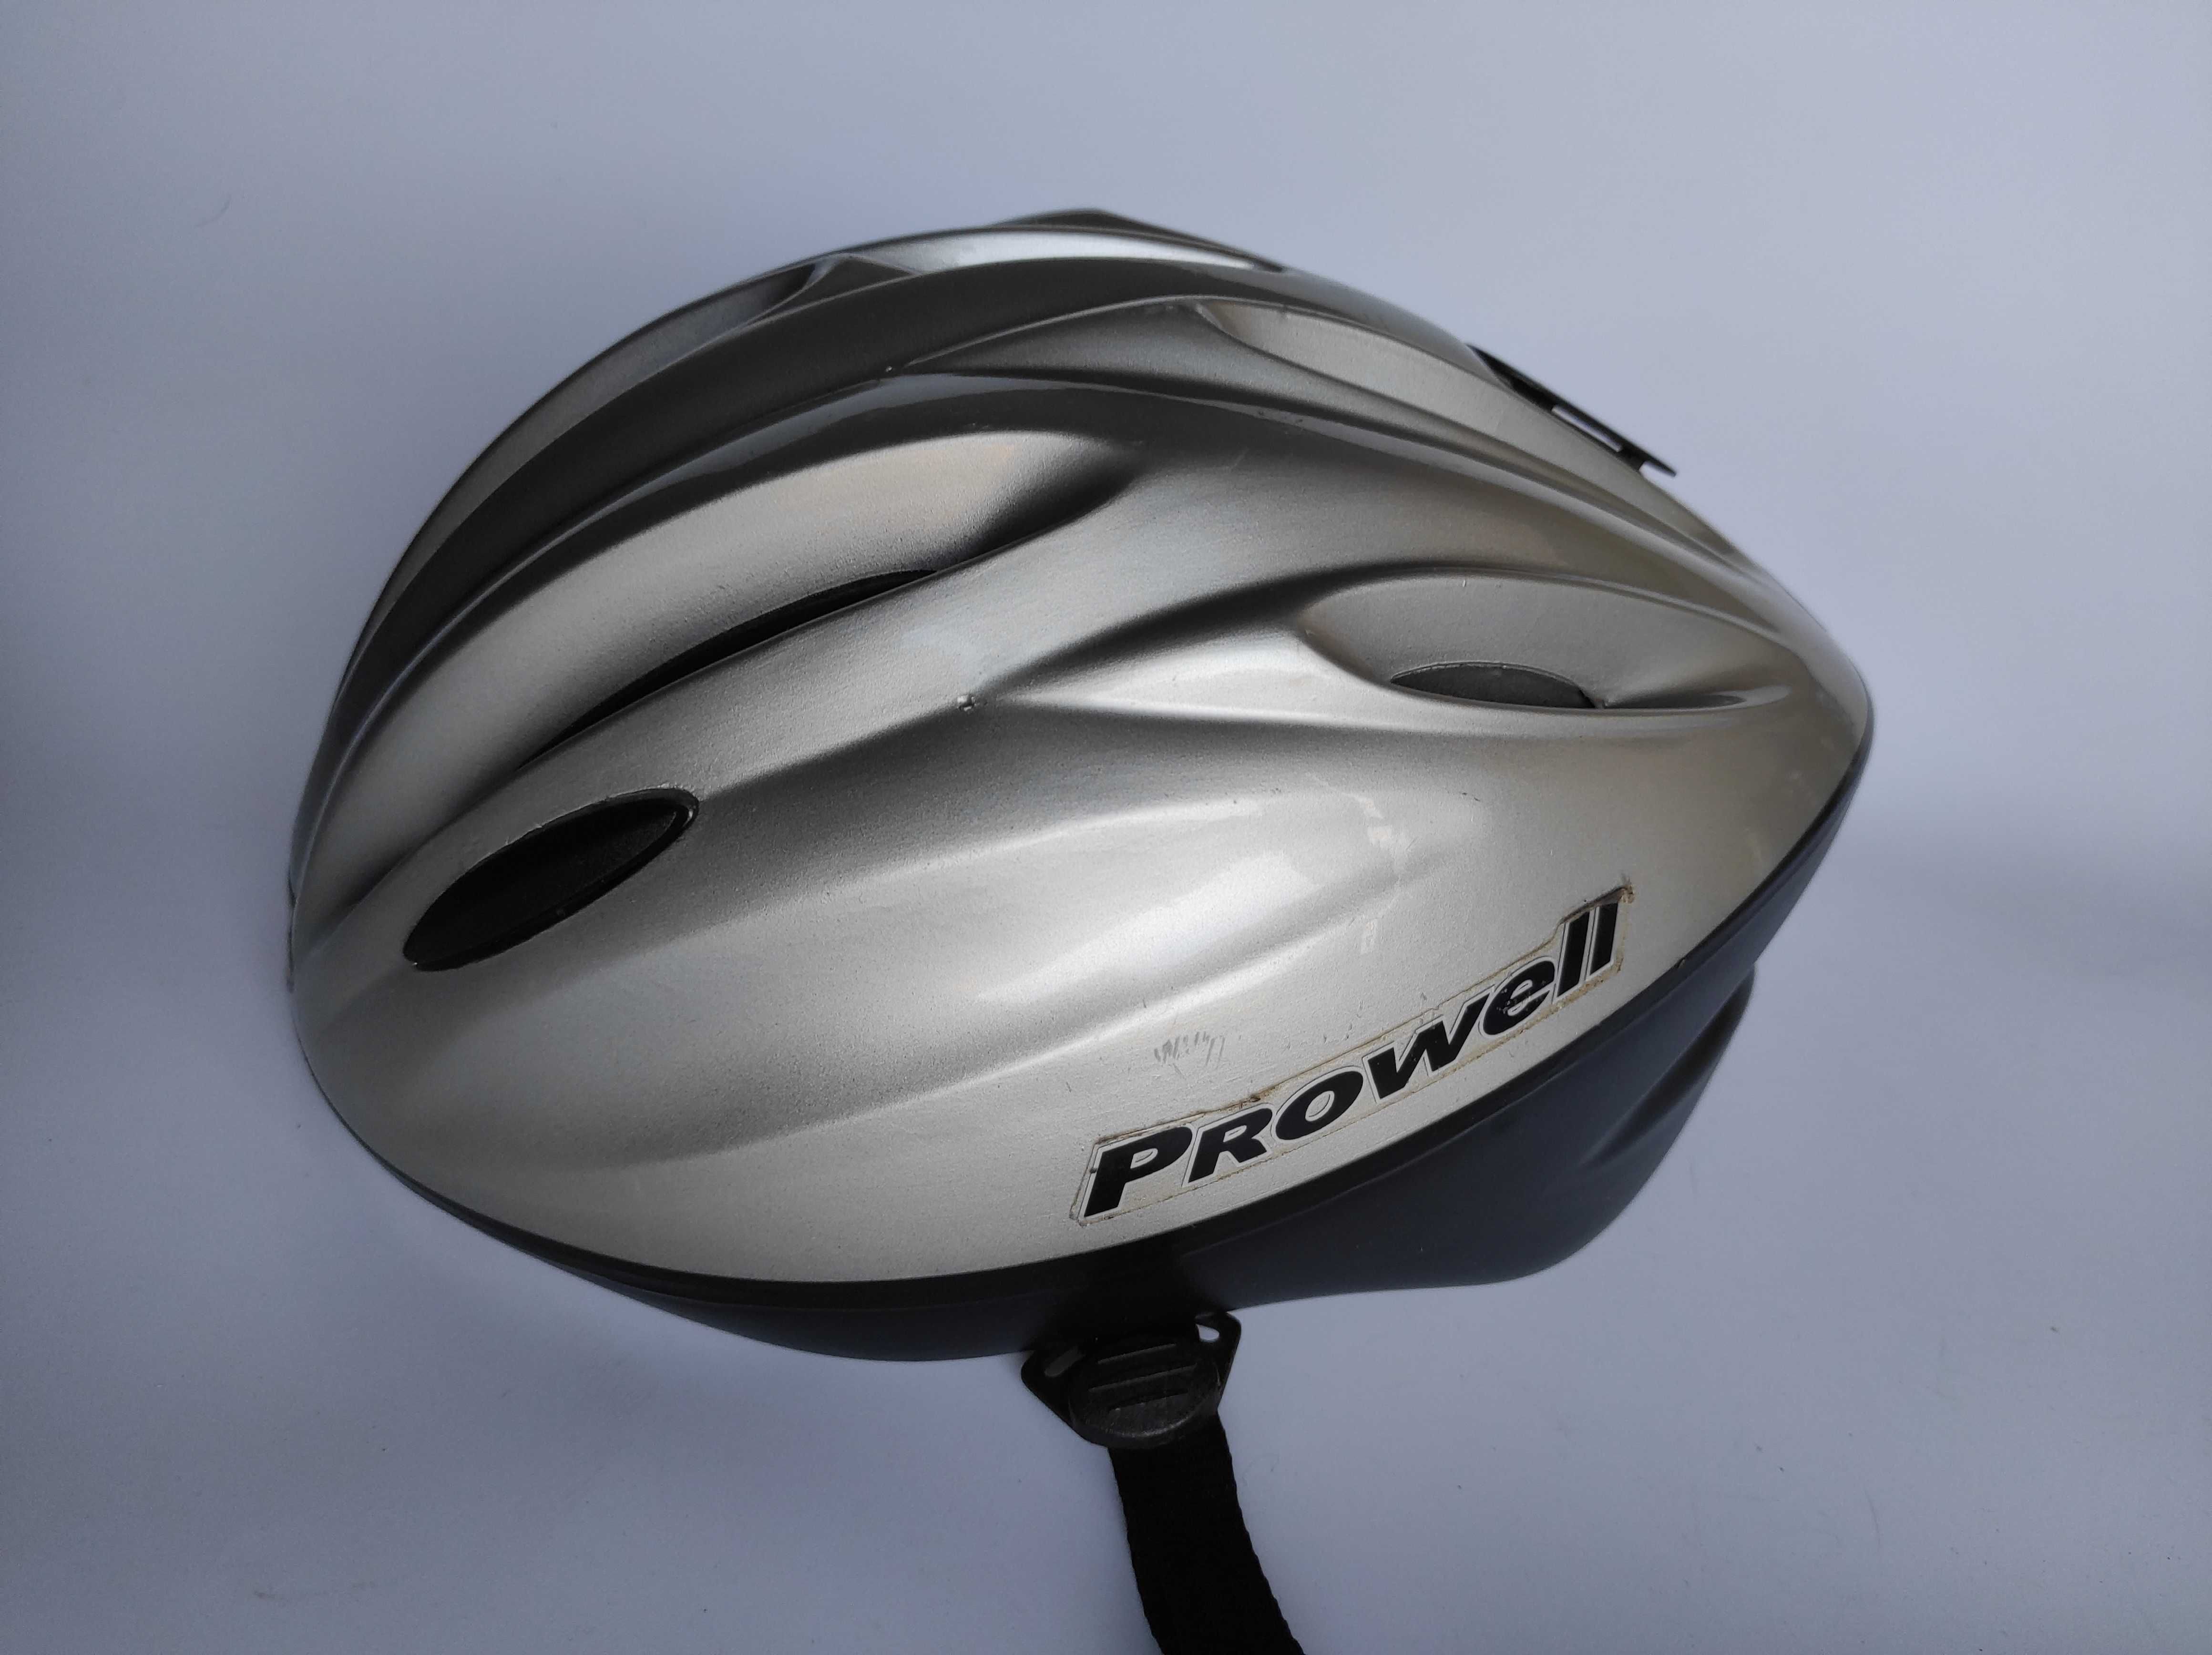 Шлем защитный Prowell F-2000, размер M/L 58-62см, велосипедный